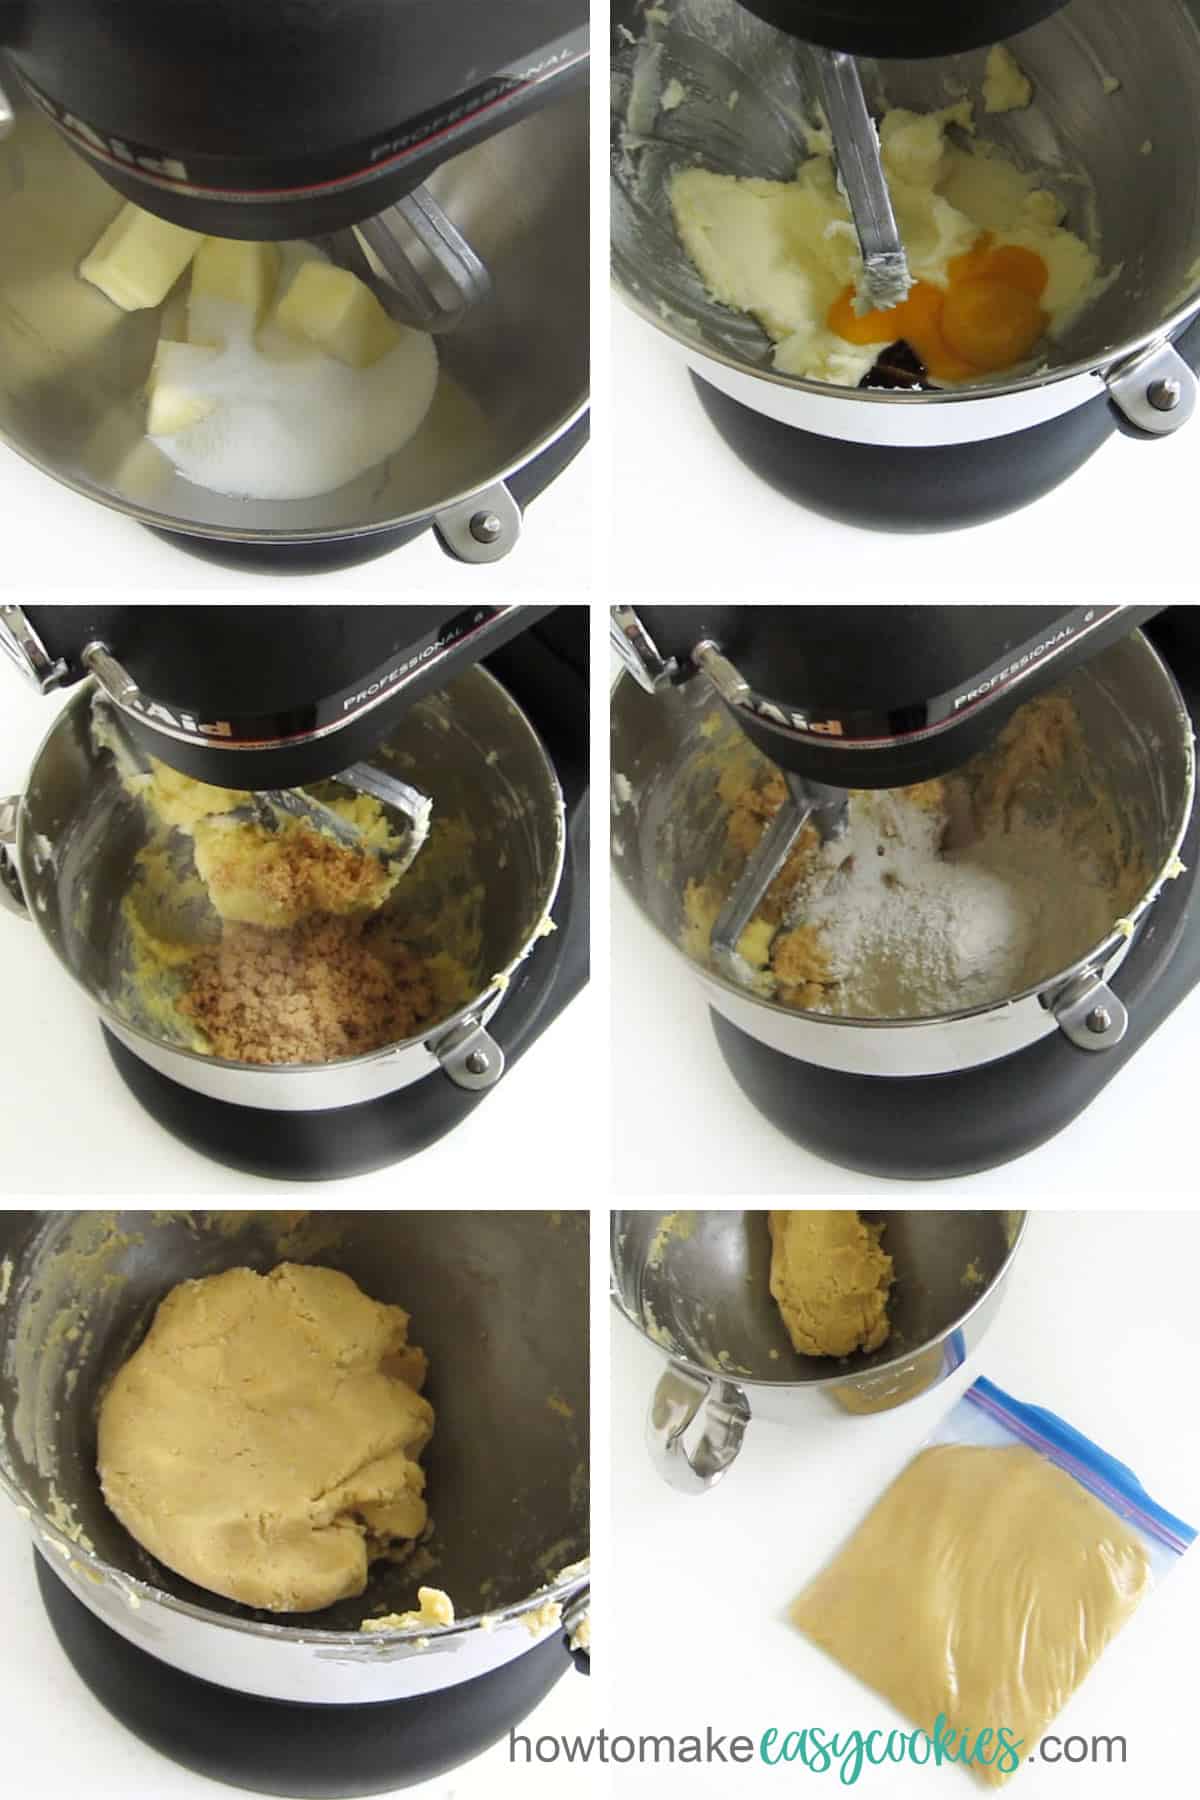 Mix butter, sugar, vanilla, eggs, almonds, sugar, flour, salt, and lemon zest to make Linzer Cookie dough. 